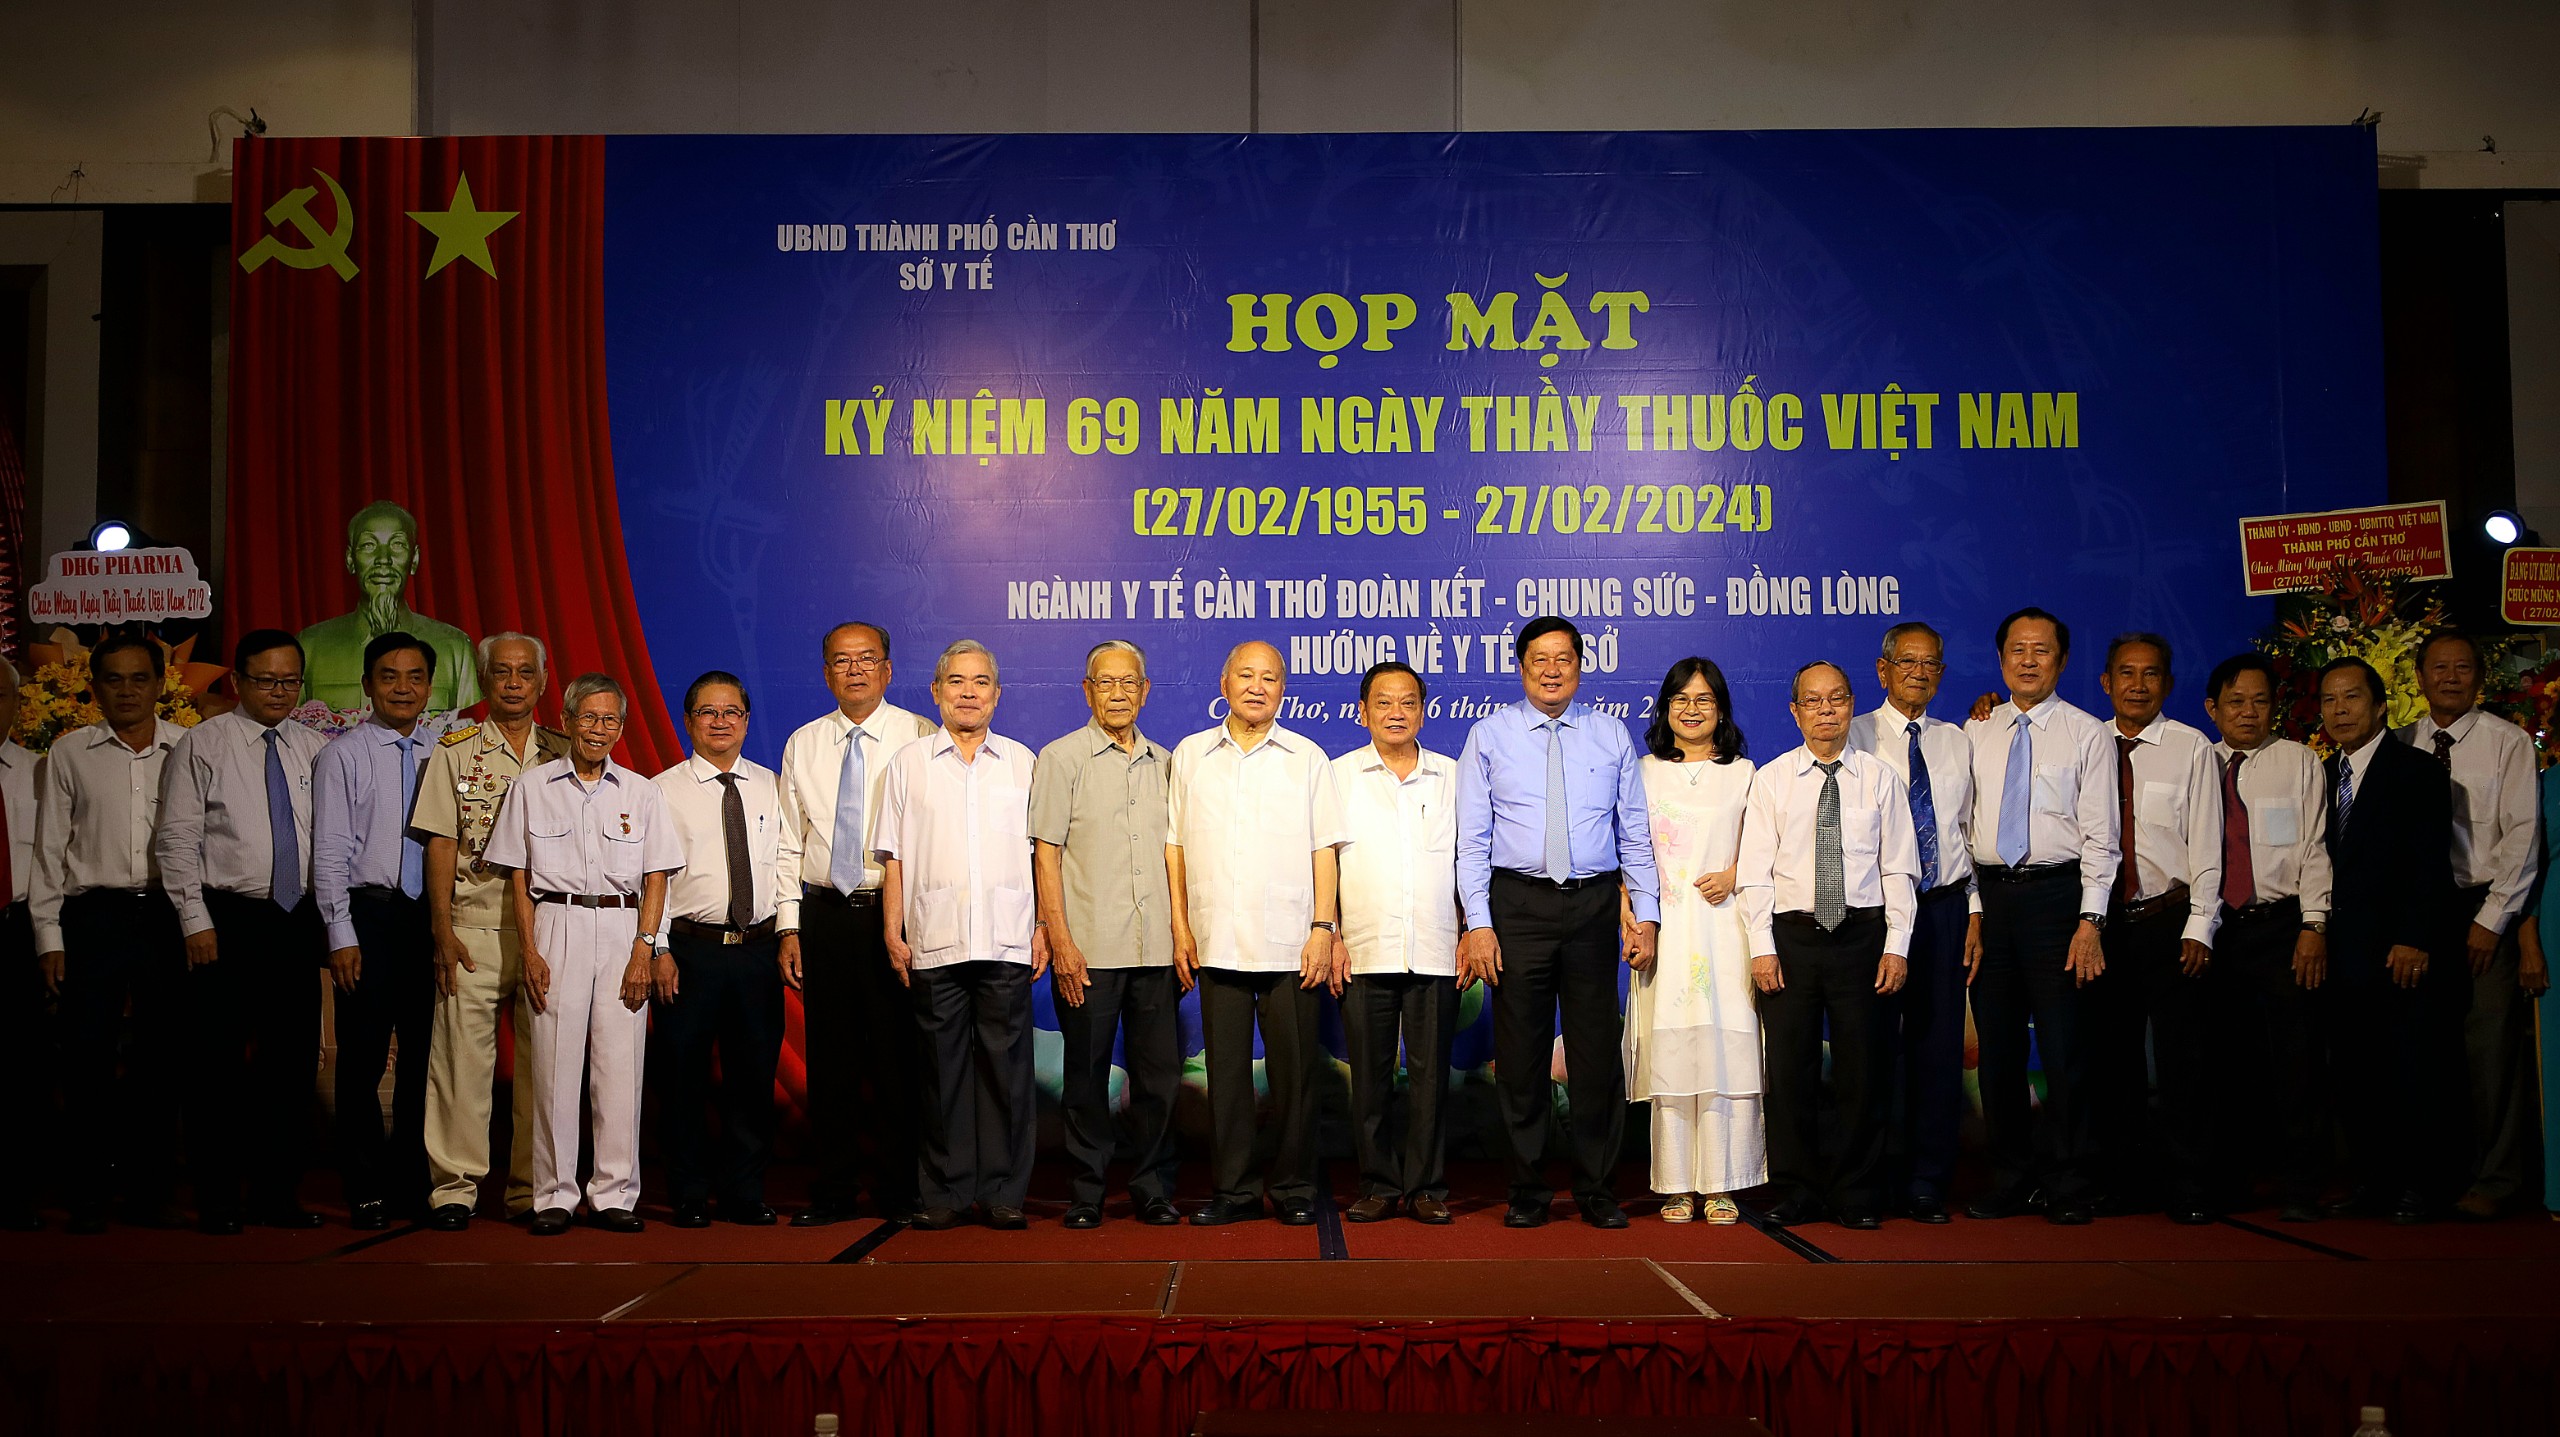 Các đại biểu chụp hình lưu niệm tại Lễ kỷ niệm 69 Ngày Thầy thuốc Việt Nam (27/2/1955 – 27/2/2024).